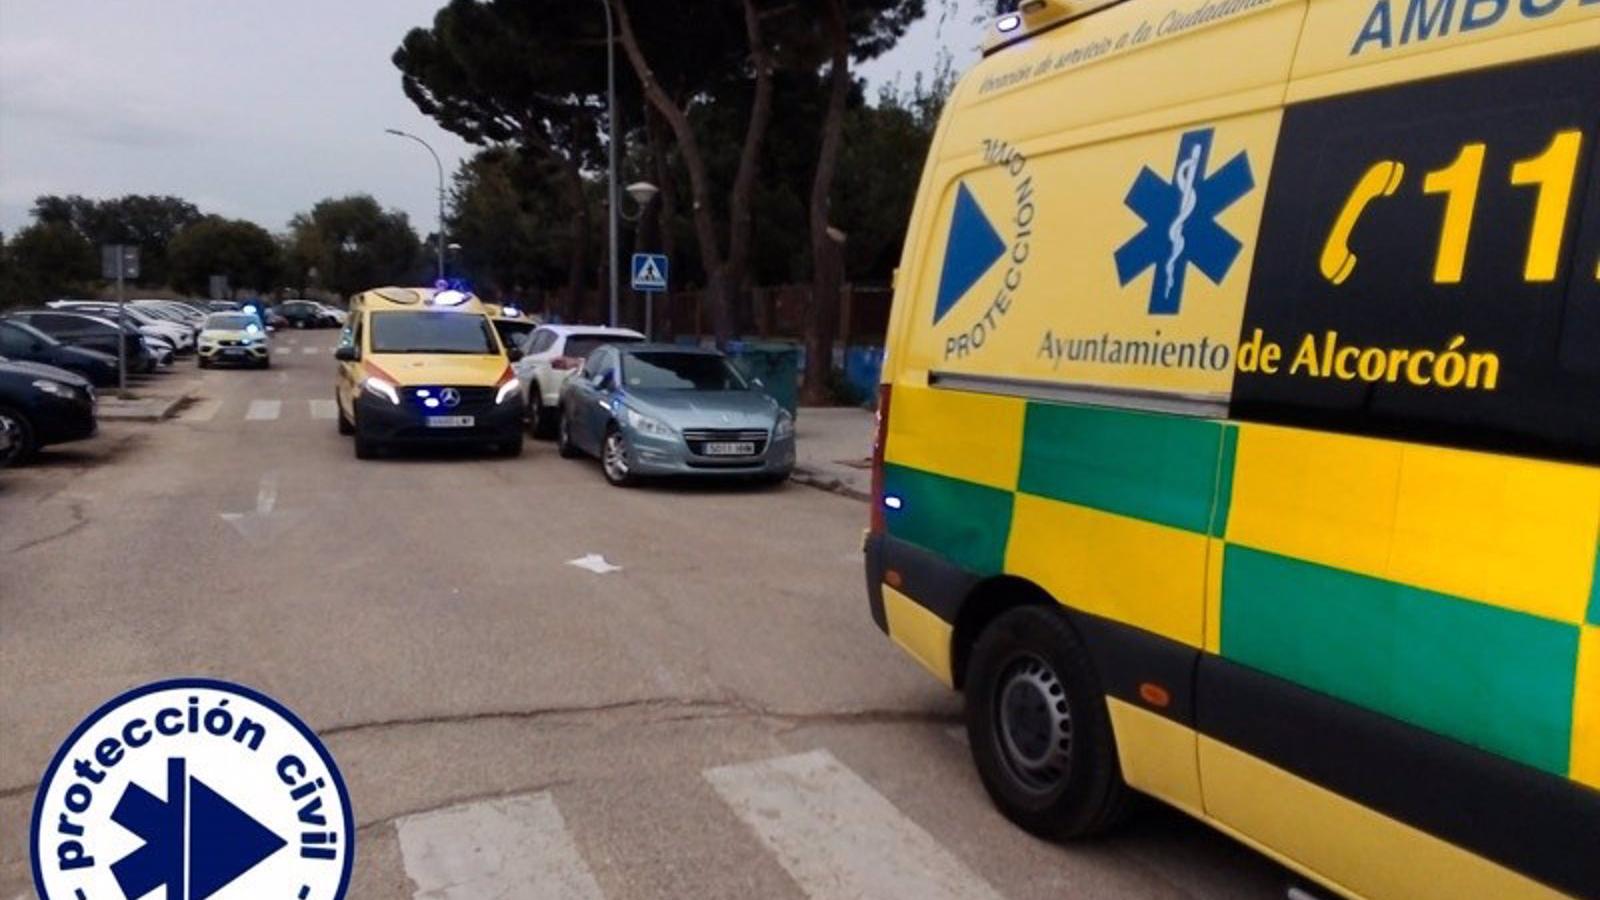 Reanimado un hombre de 62 años que entró en parada cardiaca en un polideportivo de Alcorcón